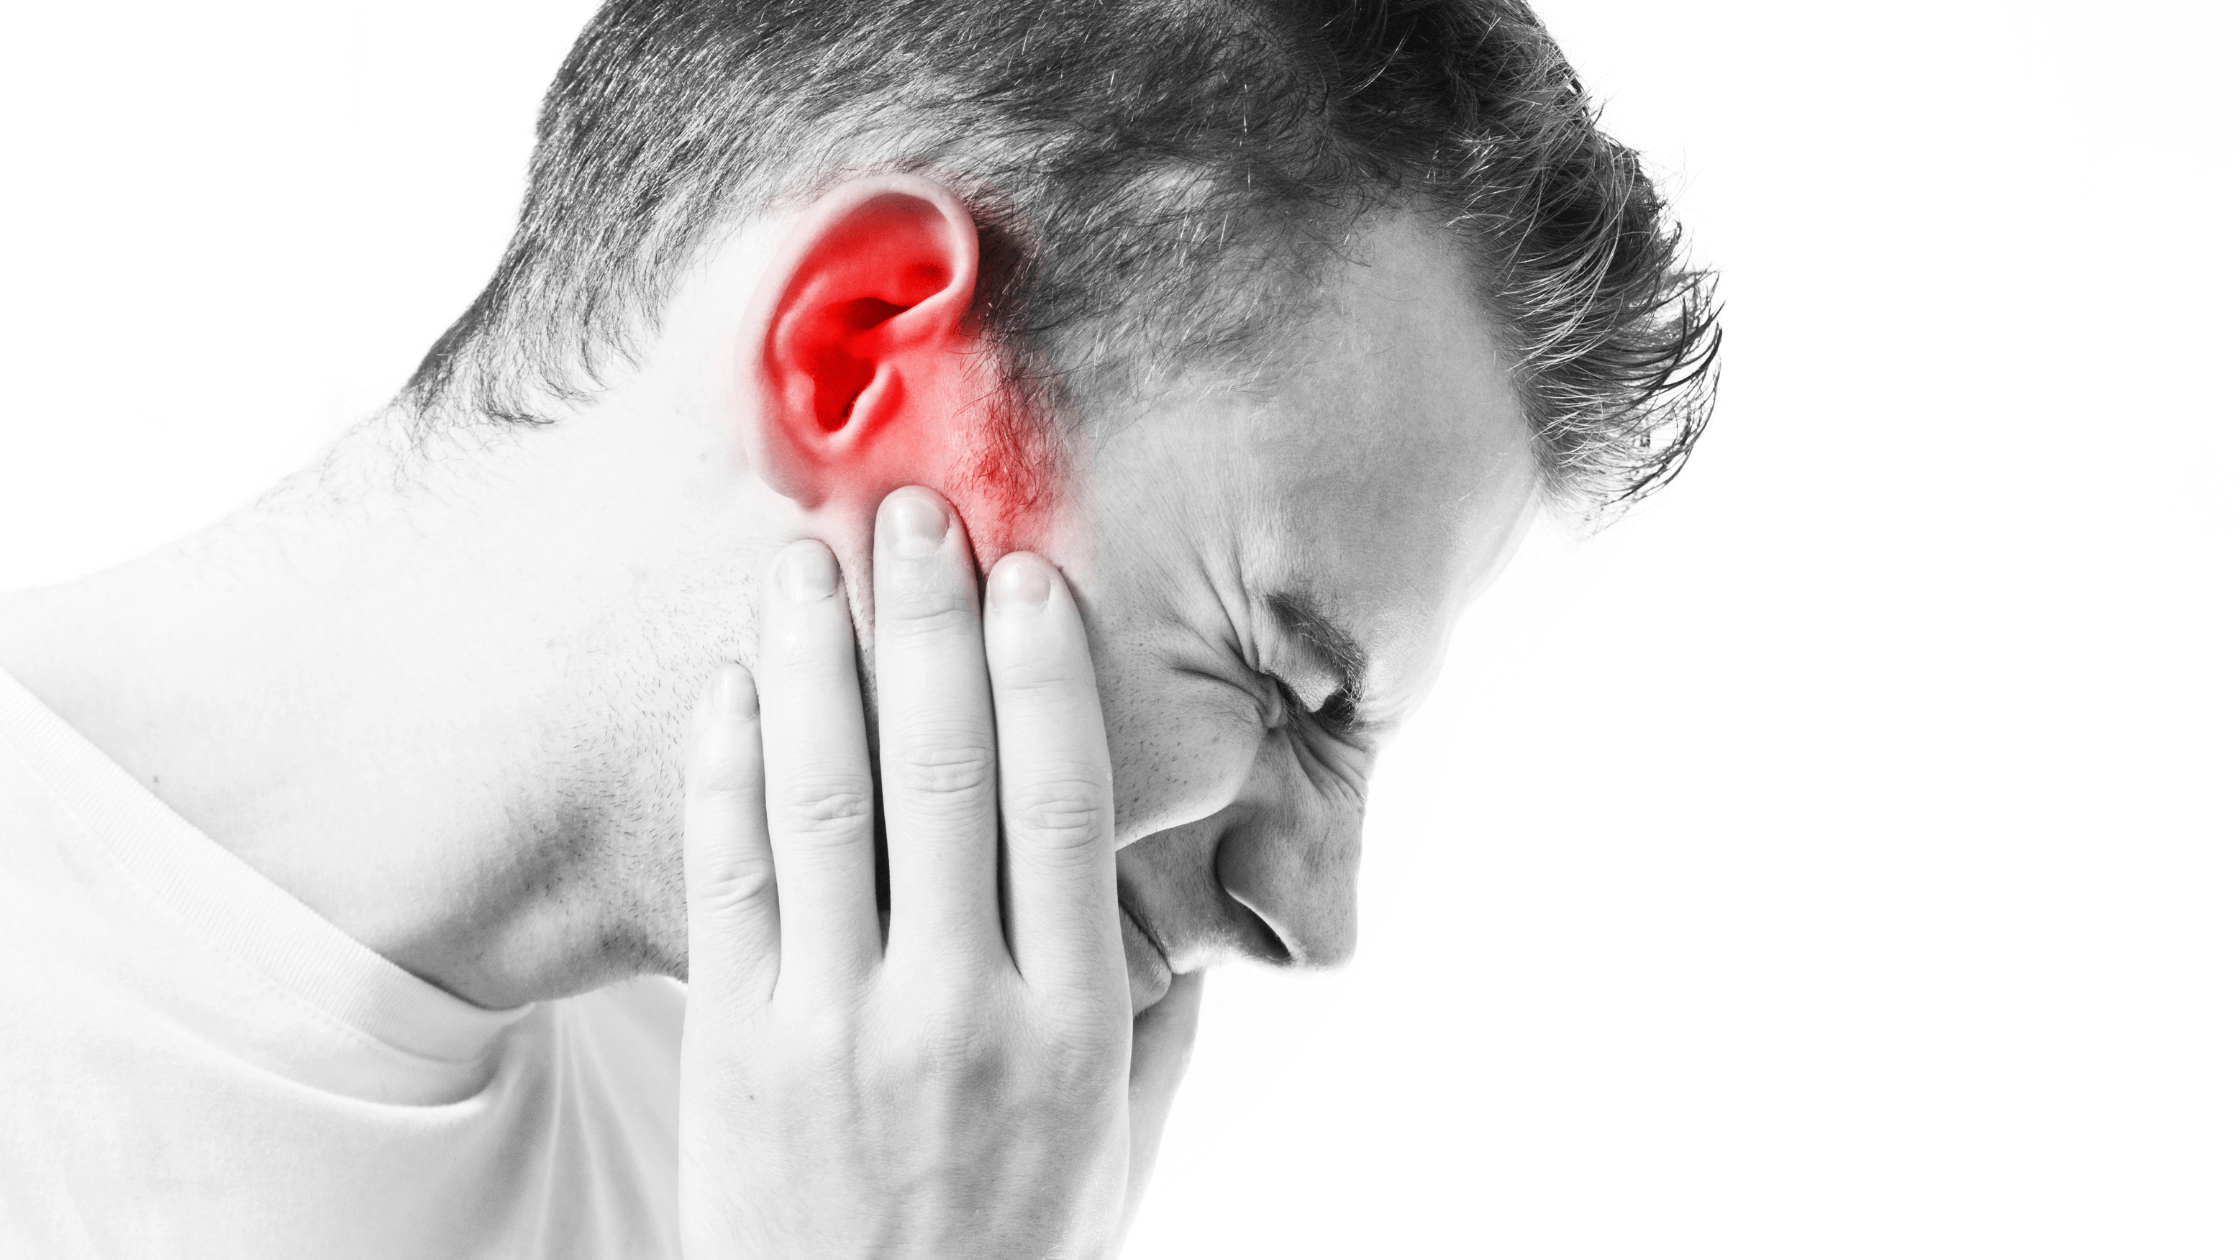 कान दर्द की समस्या से रहते हैं परेशान तो ये घरेलू उपाय आपके आ सकते हैं काम